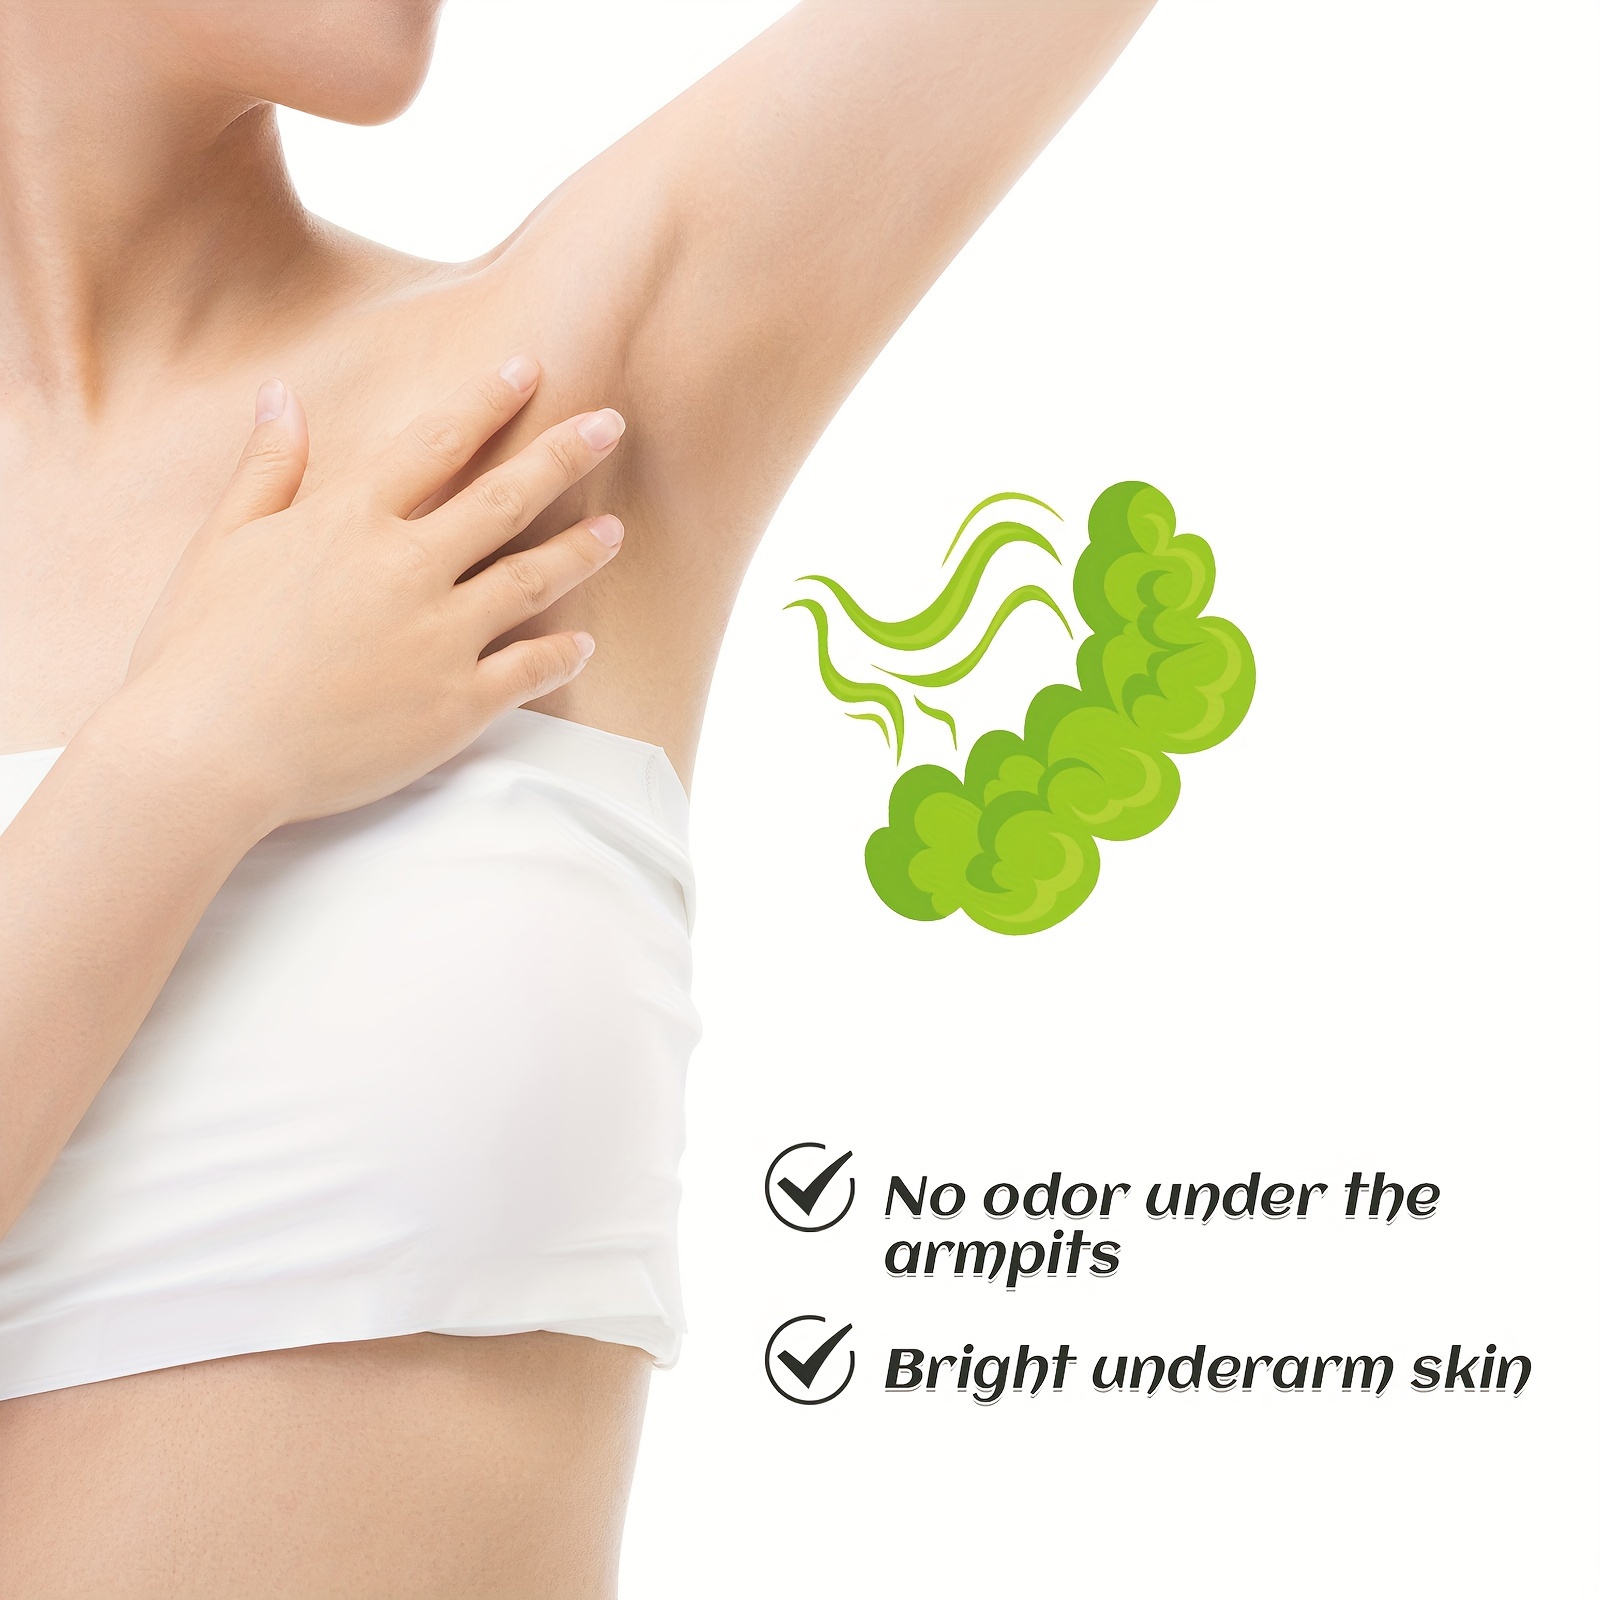 Removes Body Odor And Armpit Odor Sweat Deodor Cream Removes Body Odor And Armpit  Odor Herbal Odor Remover Body Cream 